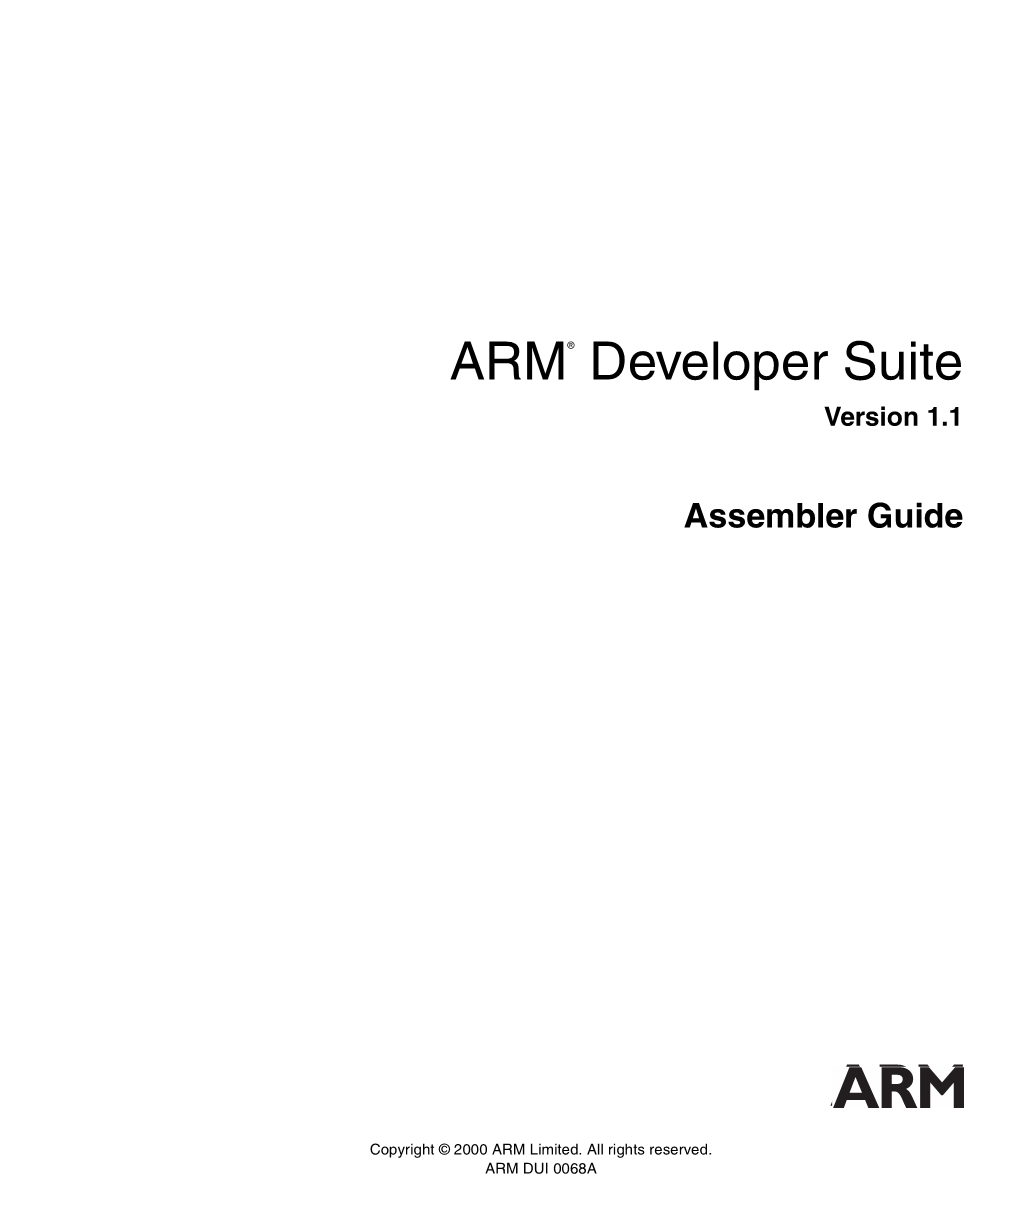 ARM® Developer Suite Version 1.1